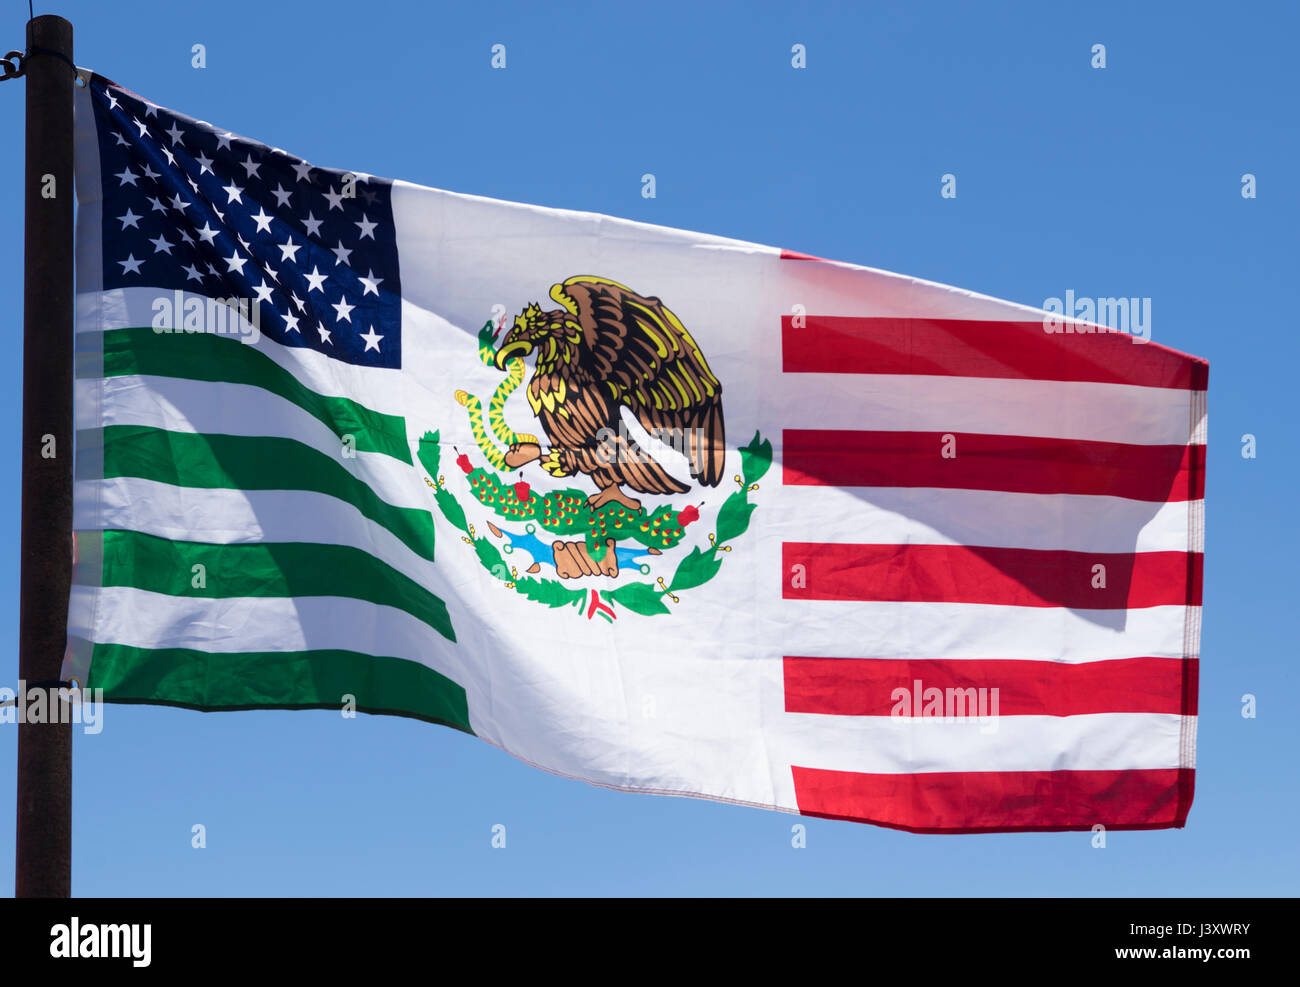 Un indicateur destiné à célébrer l'amitié American-Mexican vole au cours de la Fiesta Protesta manifestation annuelle tenue à Lajitas, Texas. Banque D'Images